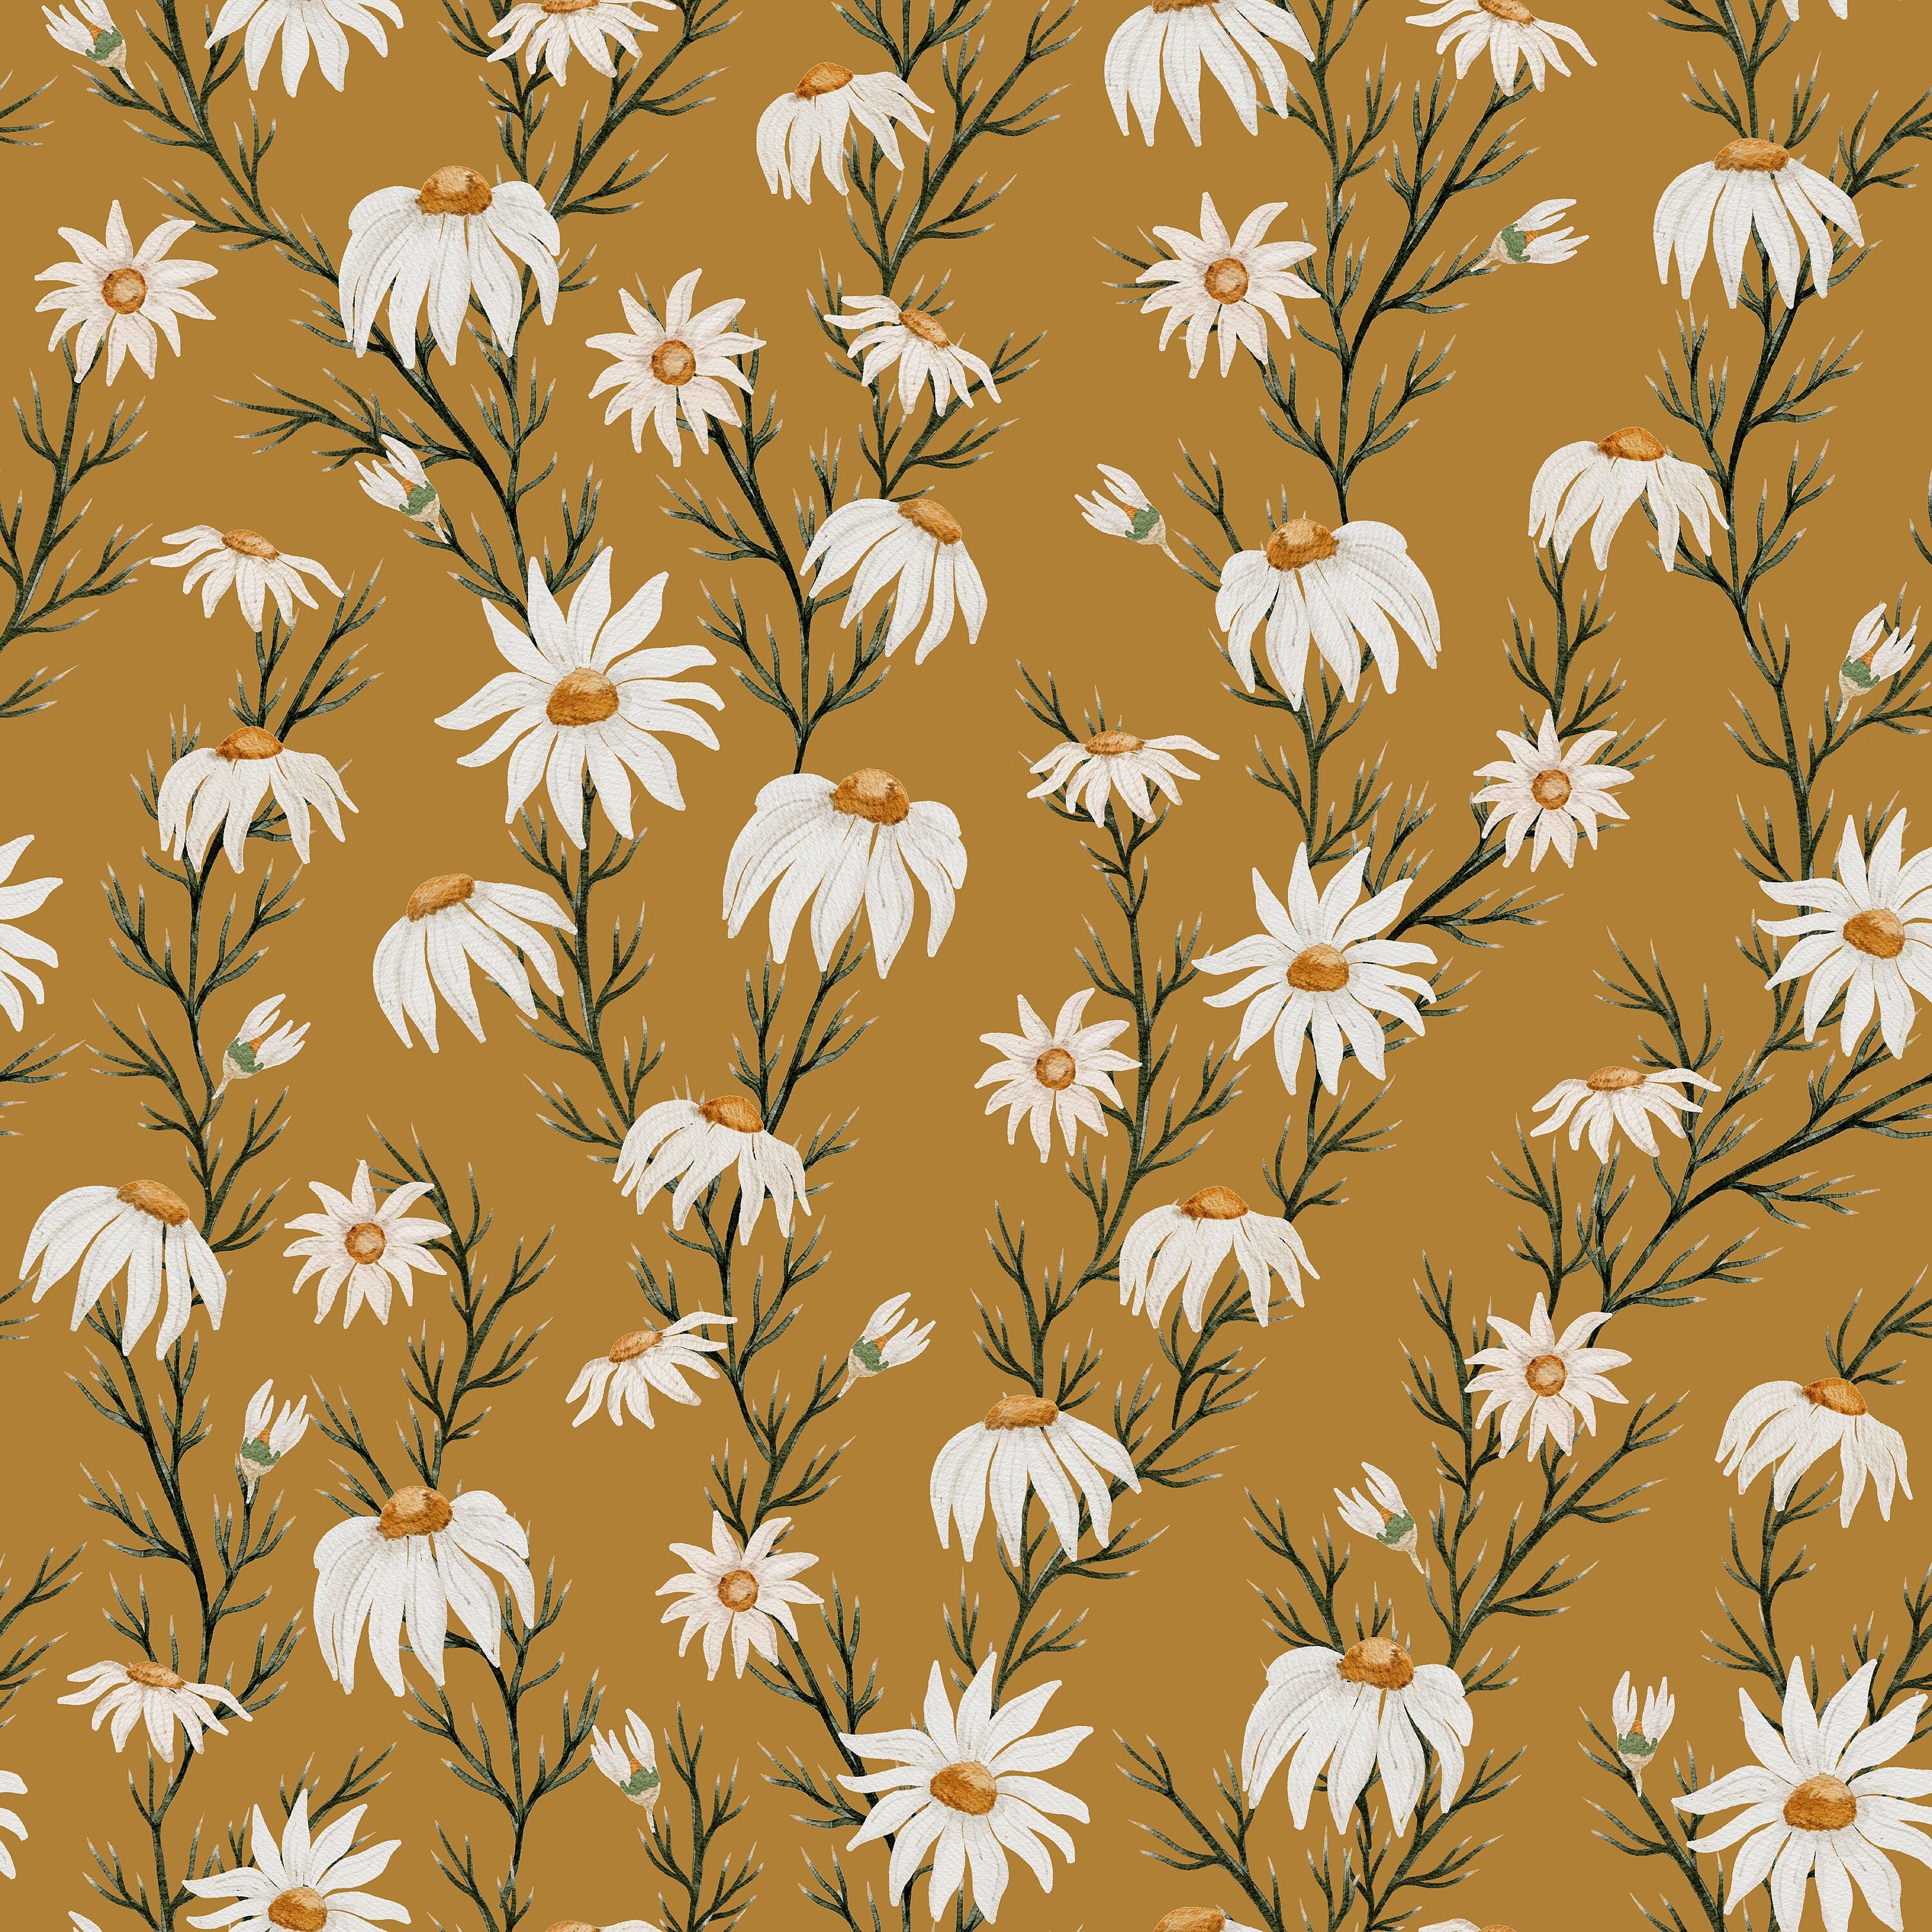 Golden Daisy Farmhouse Wallpaper | Wallpaper Peel and Stick | Removable Wallpaper | Wall Paper Peel And Stick | Wall Mural | Wall Decor 3442 - JamesAndColors